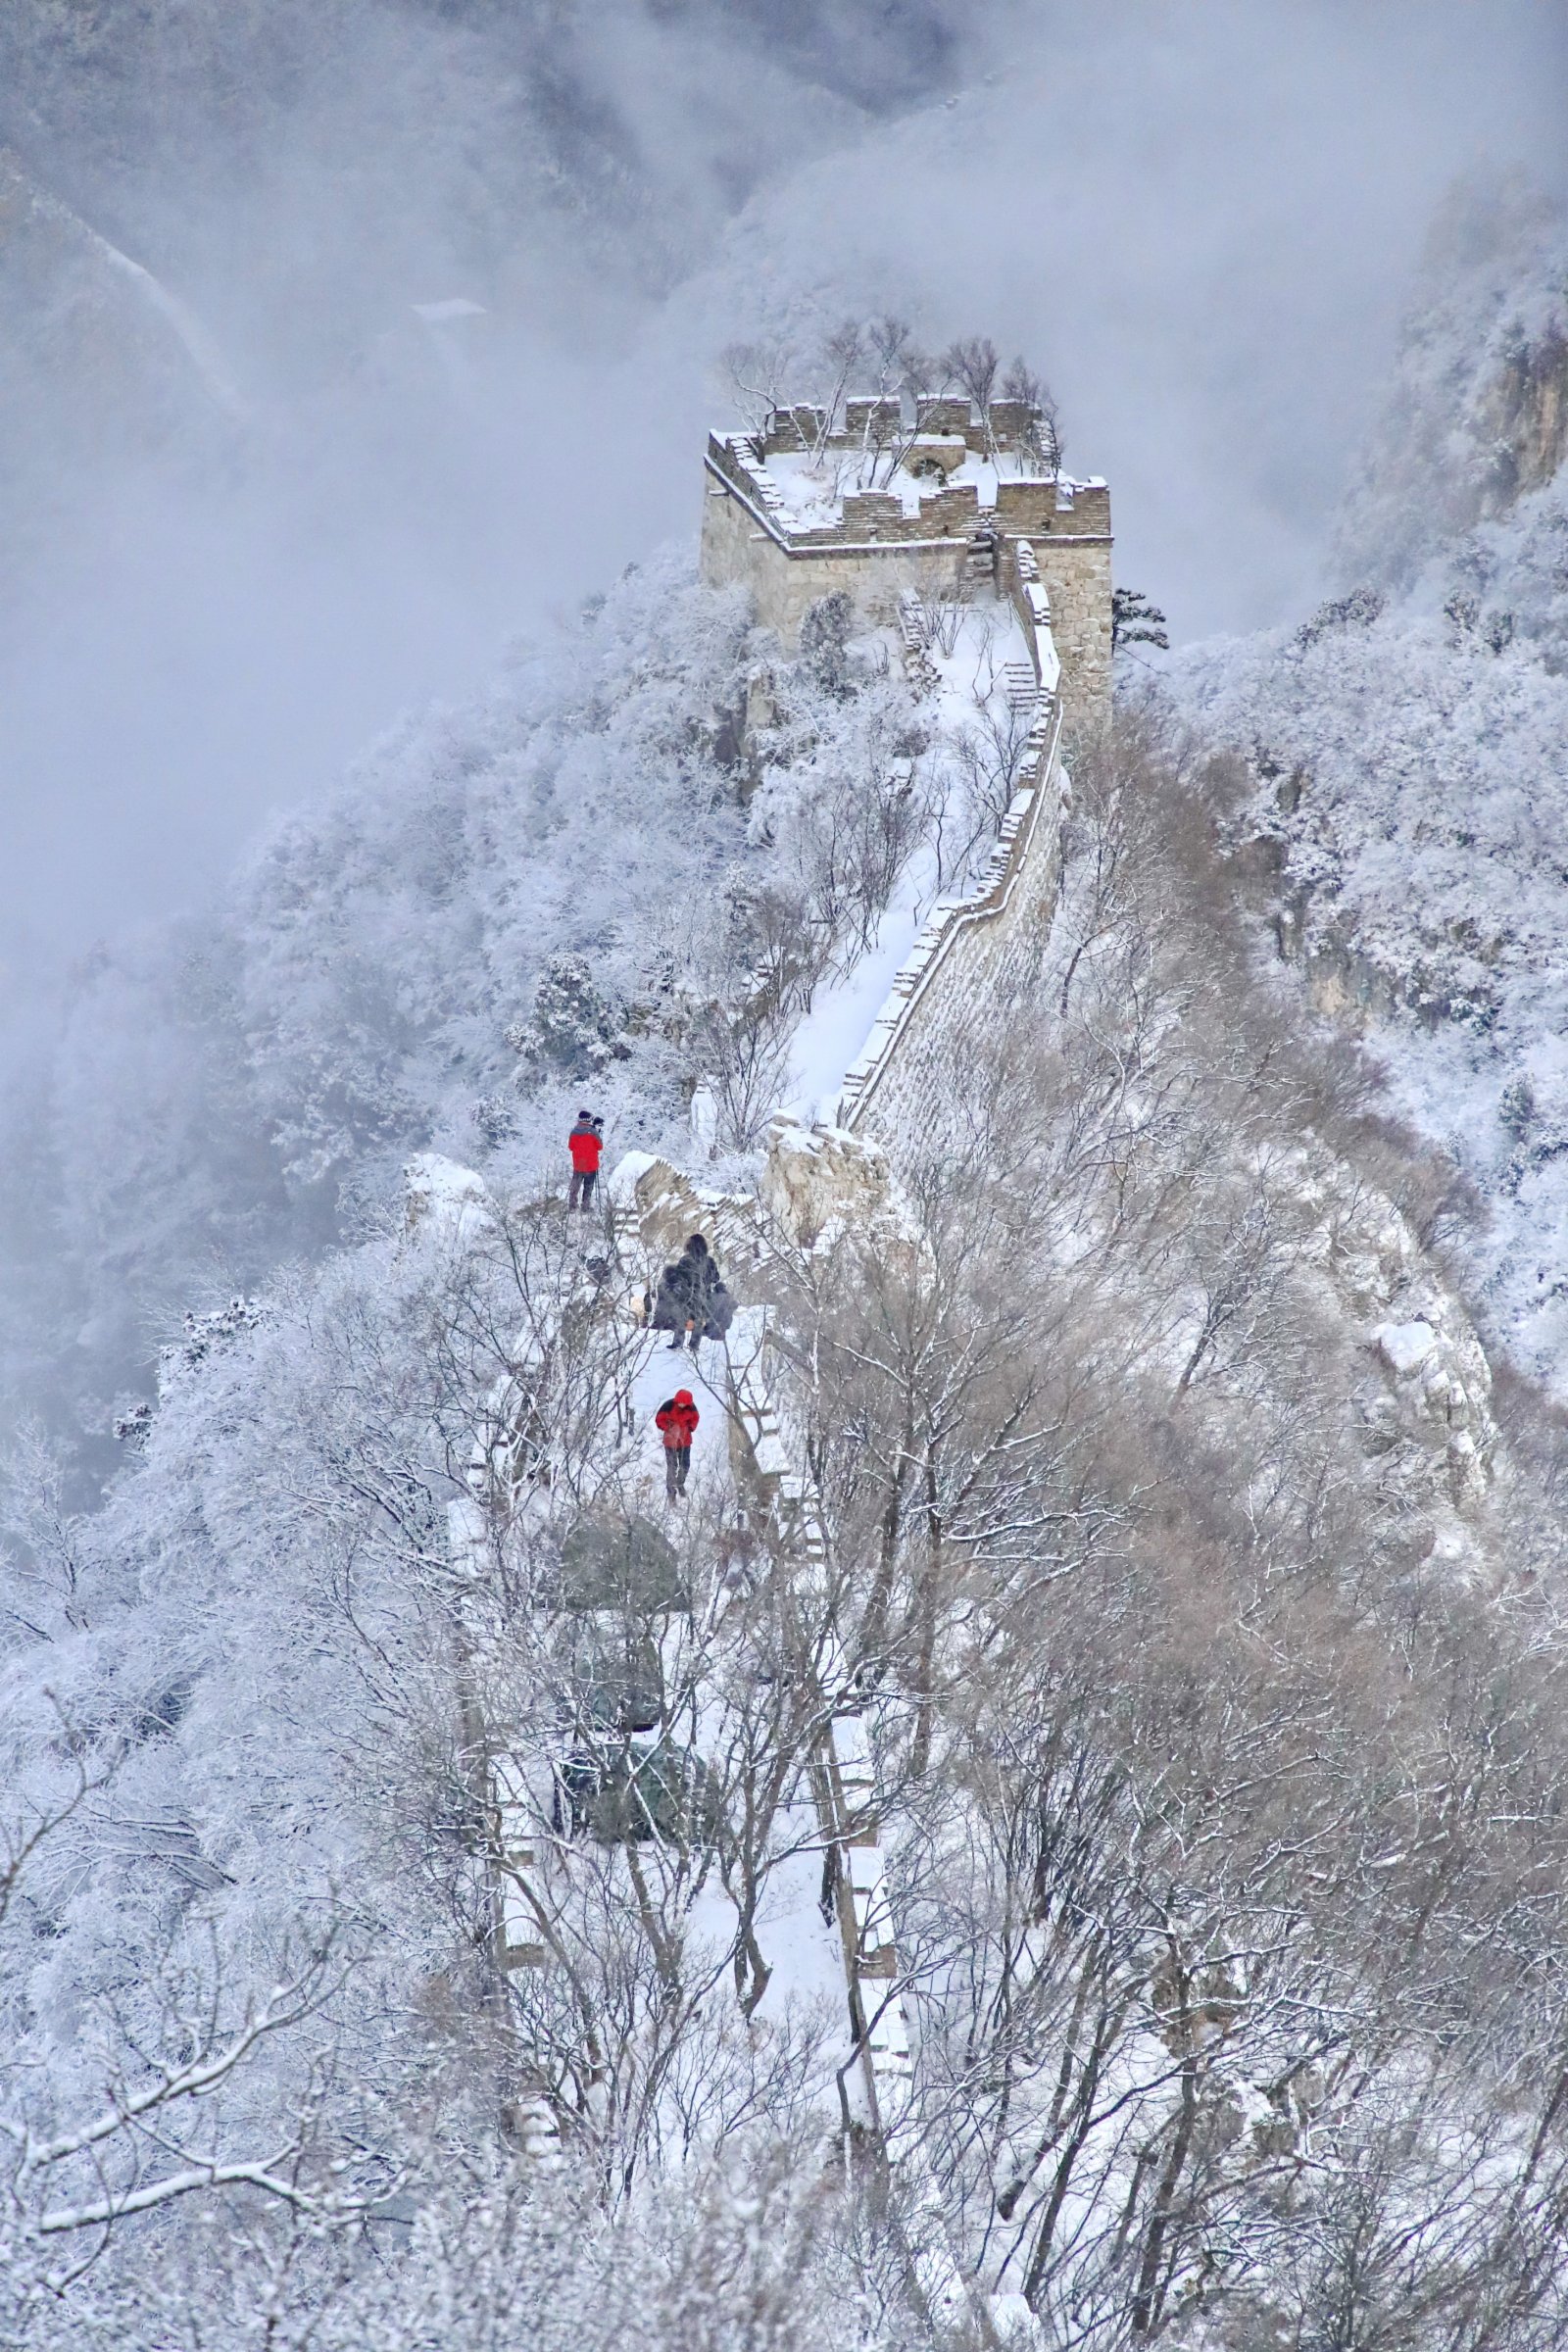 北京市懷柔區拍攝的雪後箭扣長城美景。